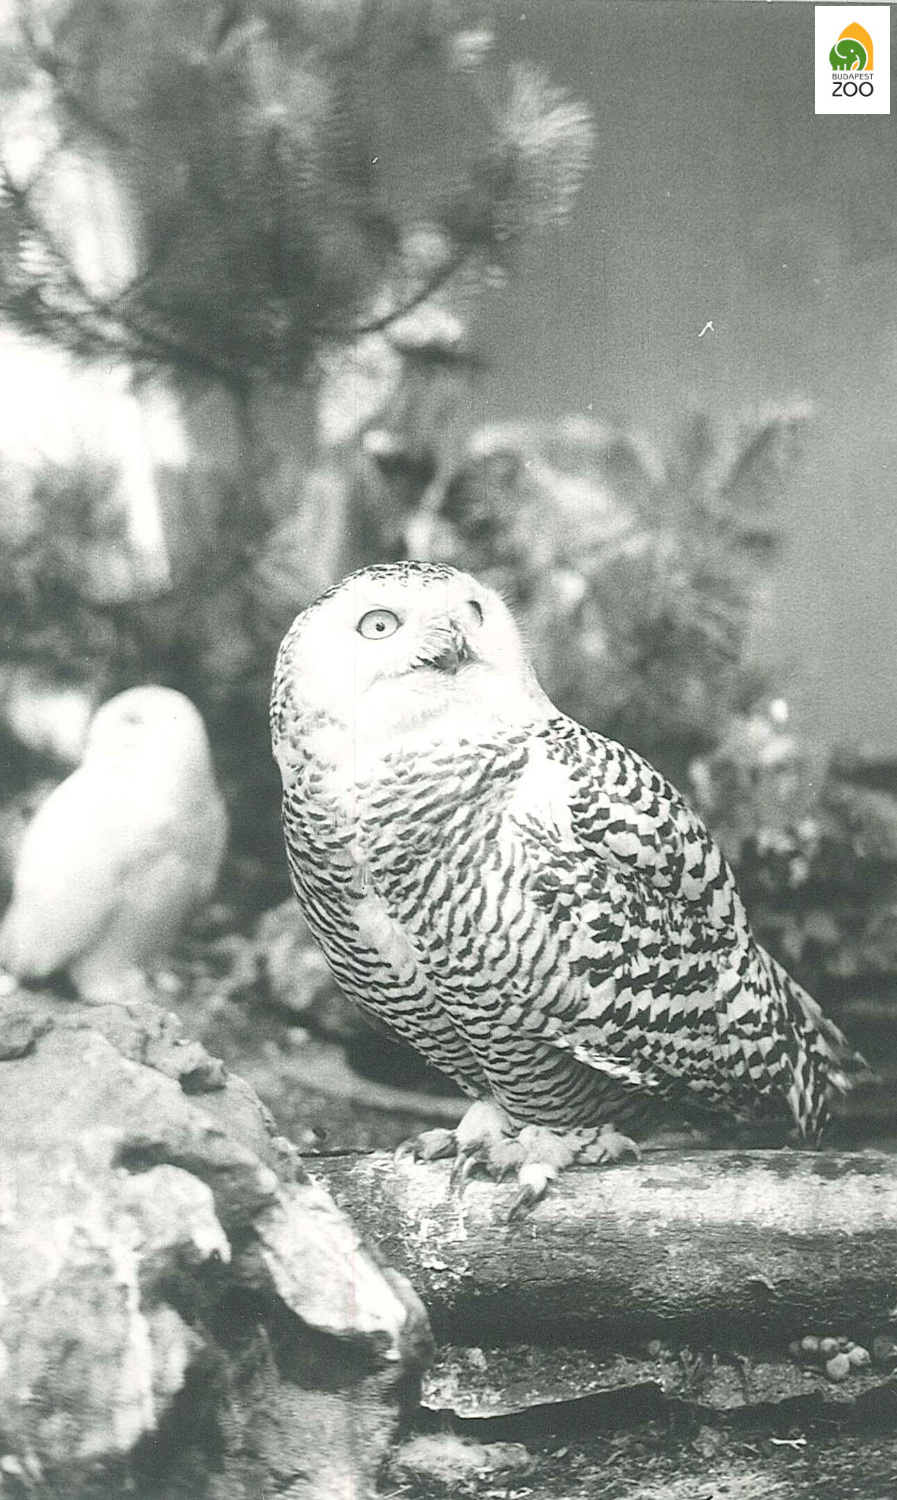 Hóbagoly tojó az 1930-as években, a háttérben a párja is látható. Hölzel Gyula felvétel